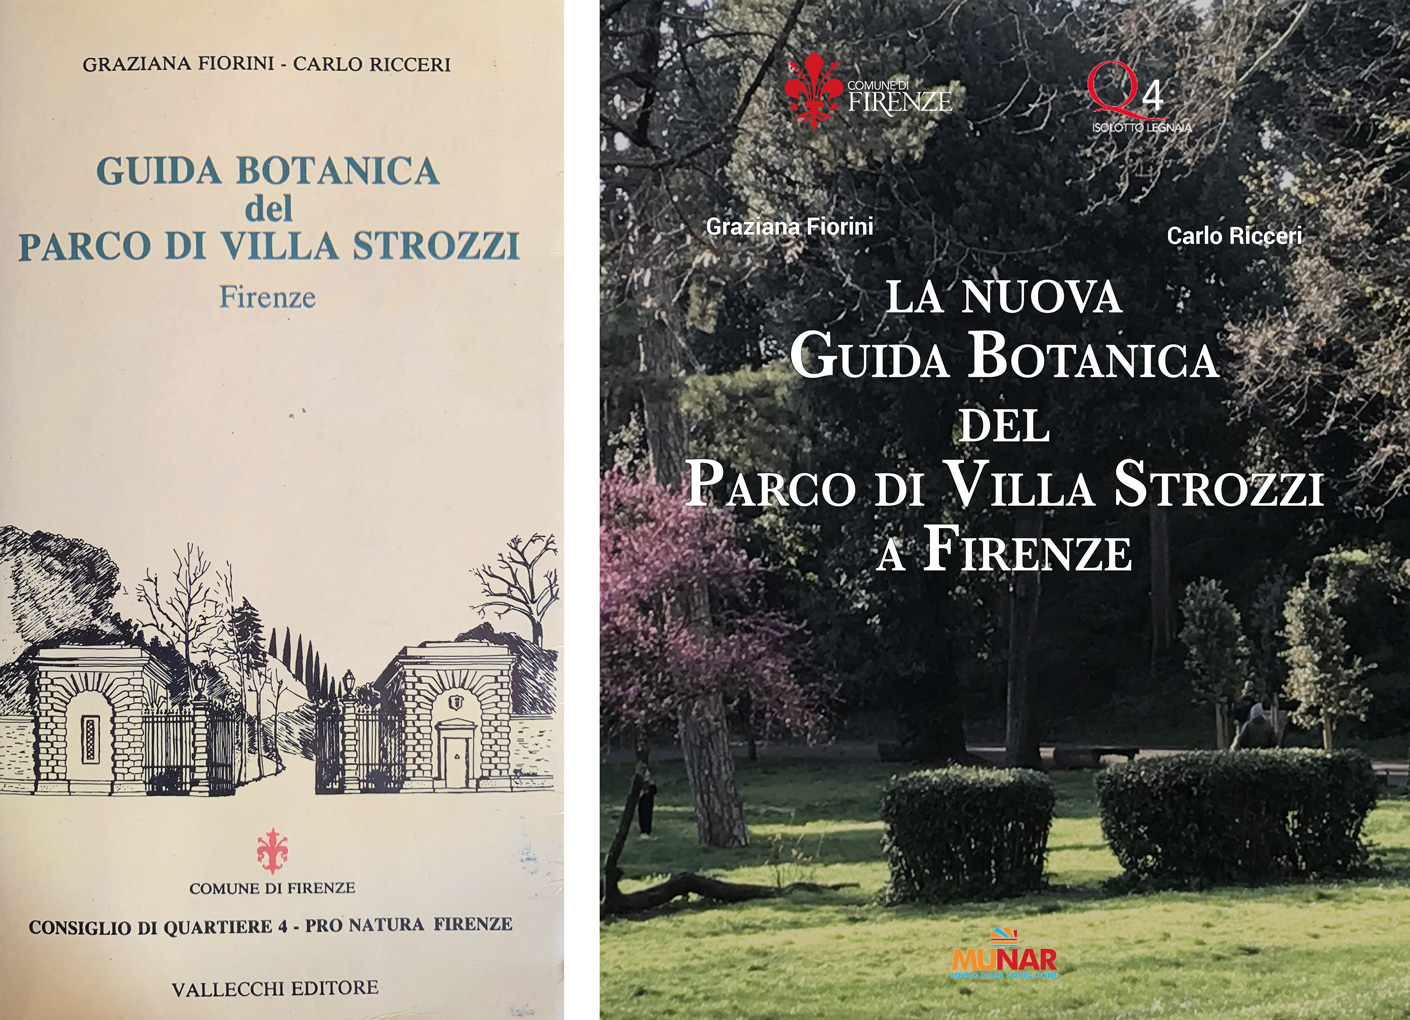 «La Nuova Guida Botanica del Parco di Villa Strozzi»